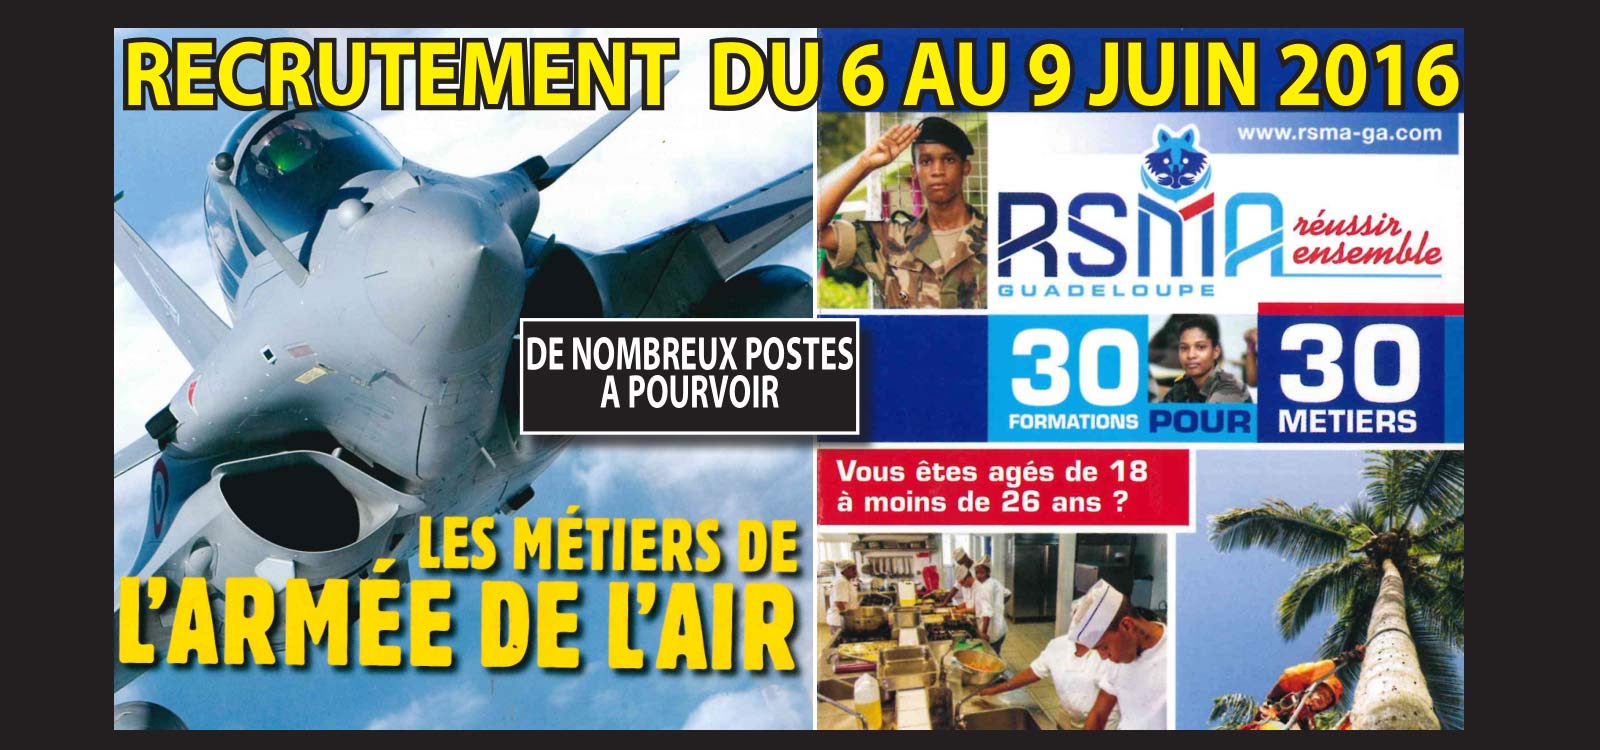 Le RSMA et l'arme de l'Air recrutent  Saint-Martin !